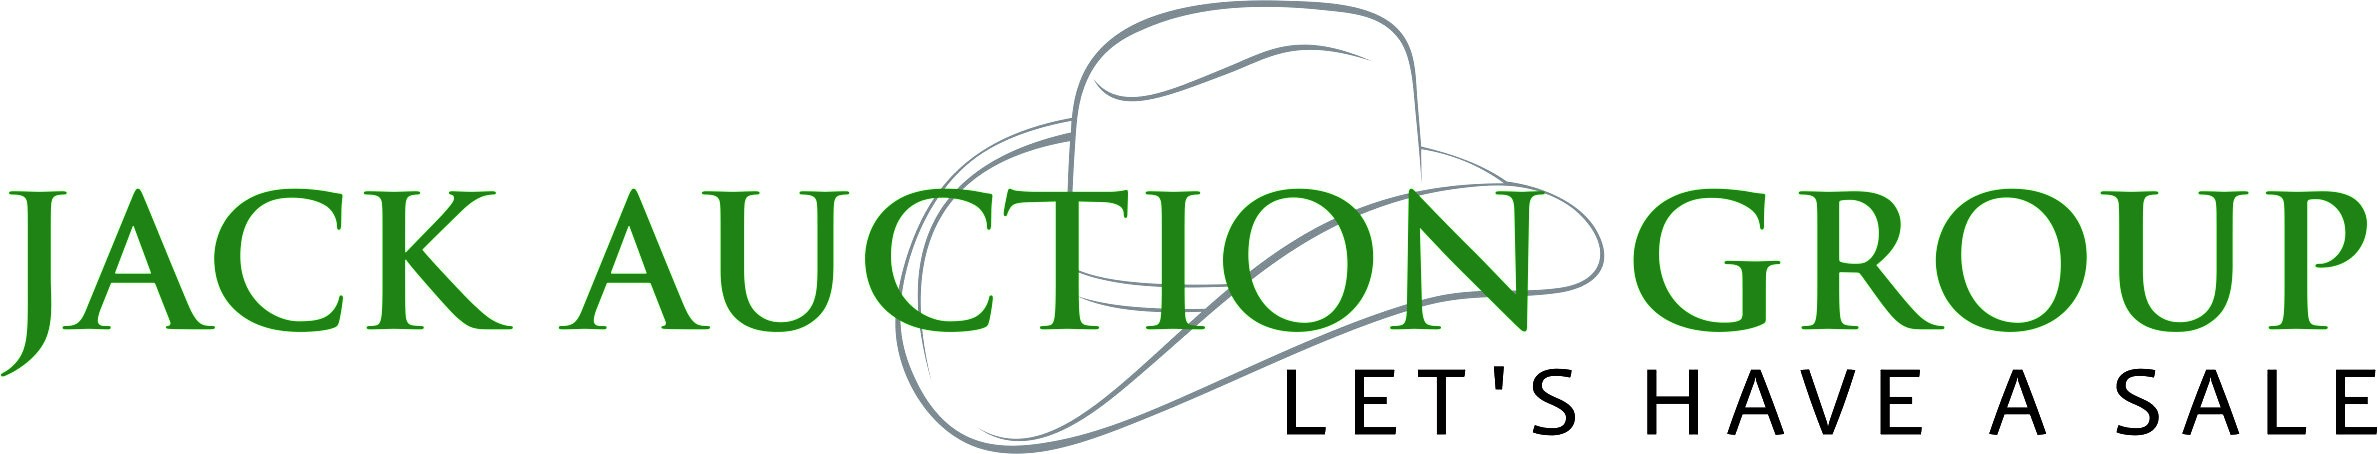 Jack Auction Group logo